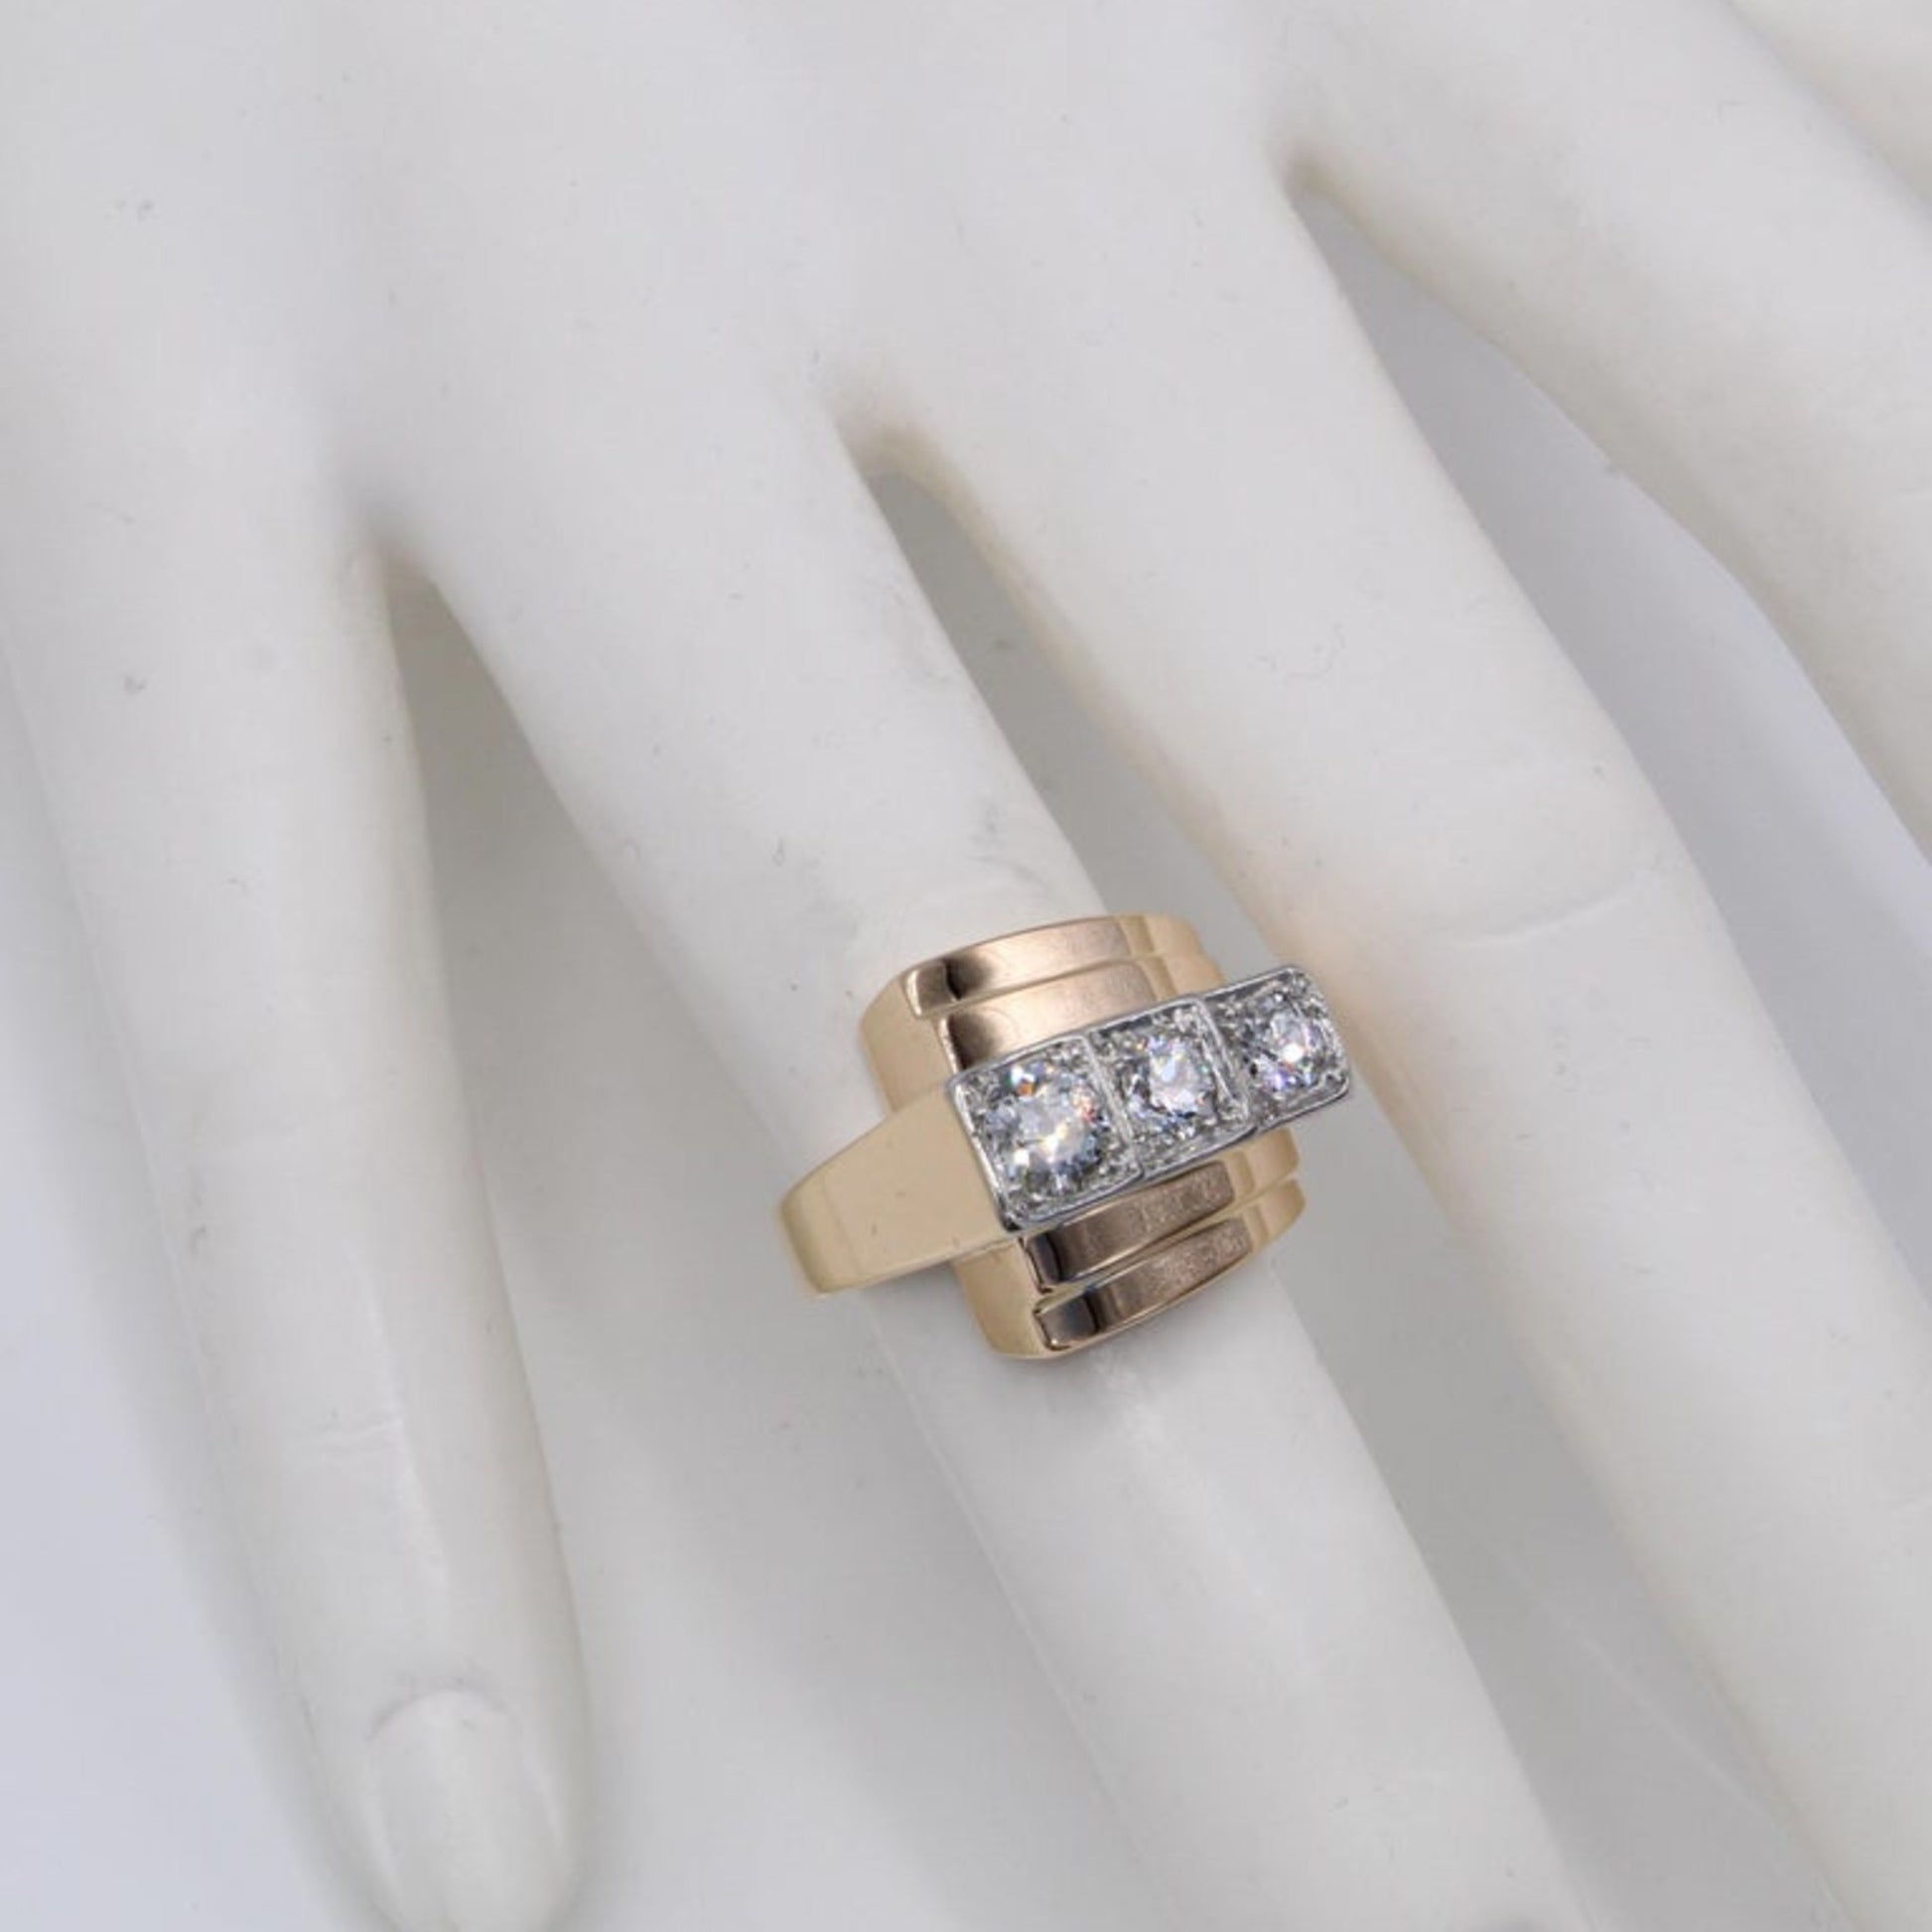 French Retro Platinum & 18KT Rose Gold Diamond Ring on finger